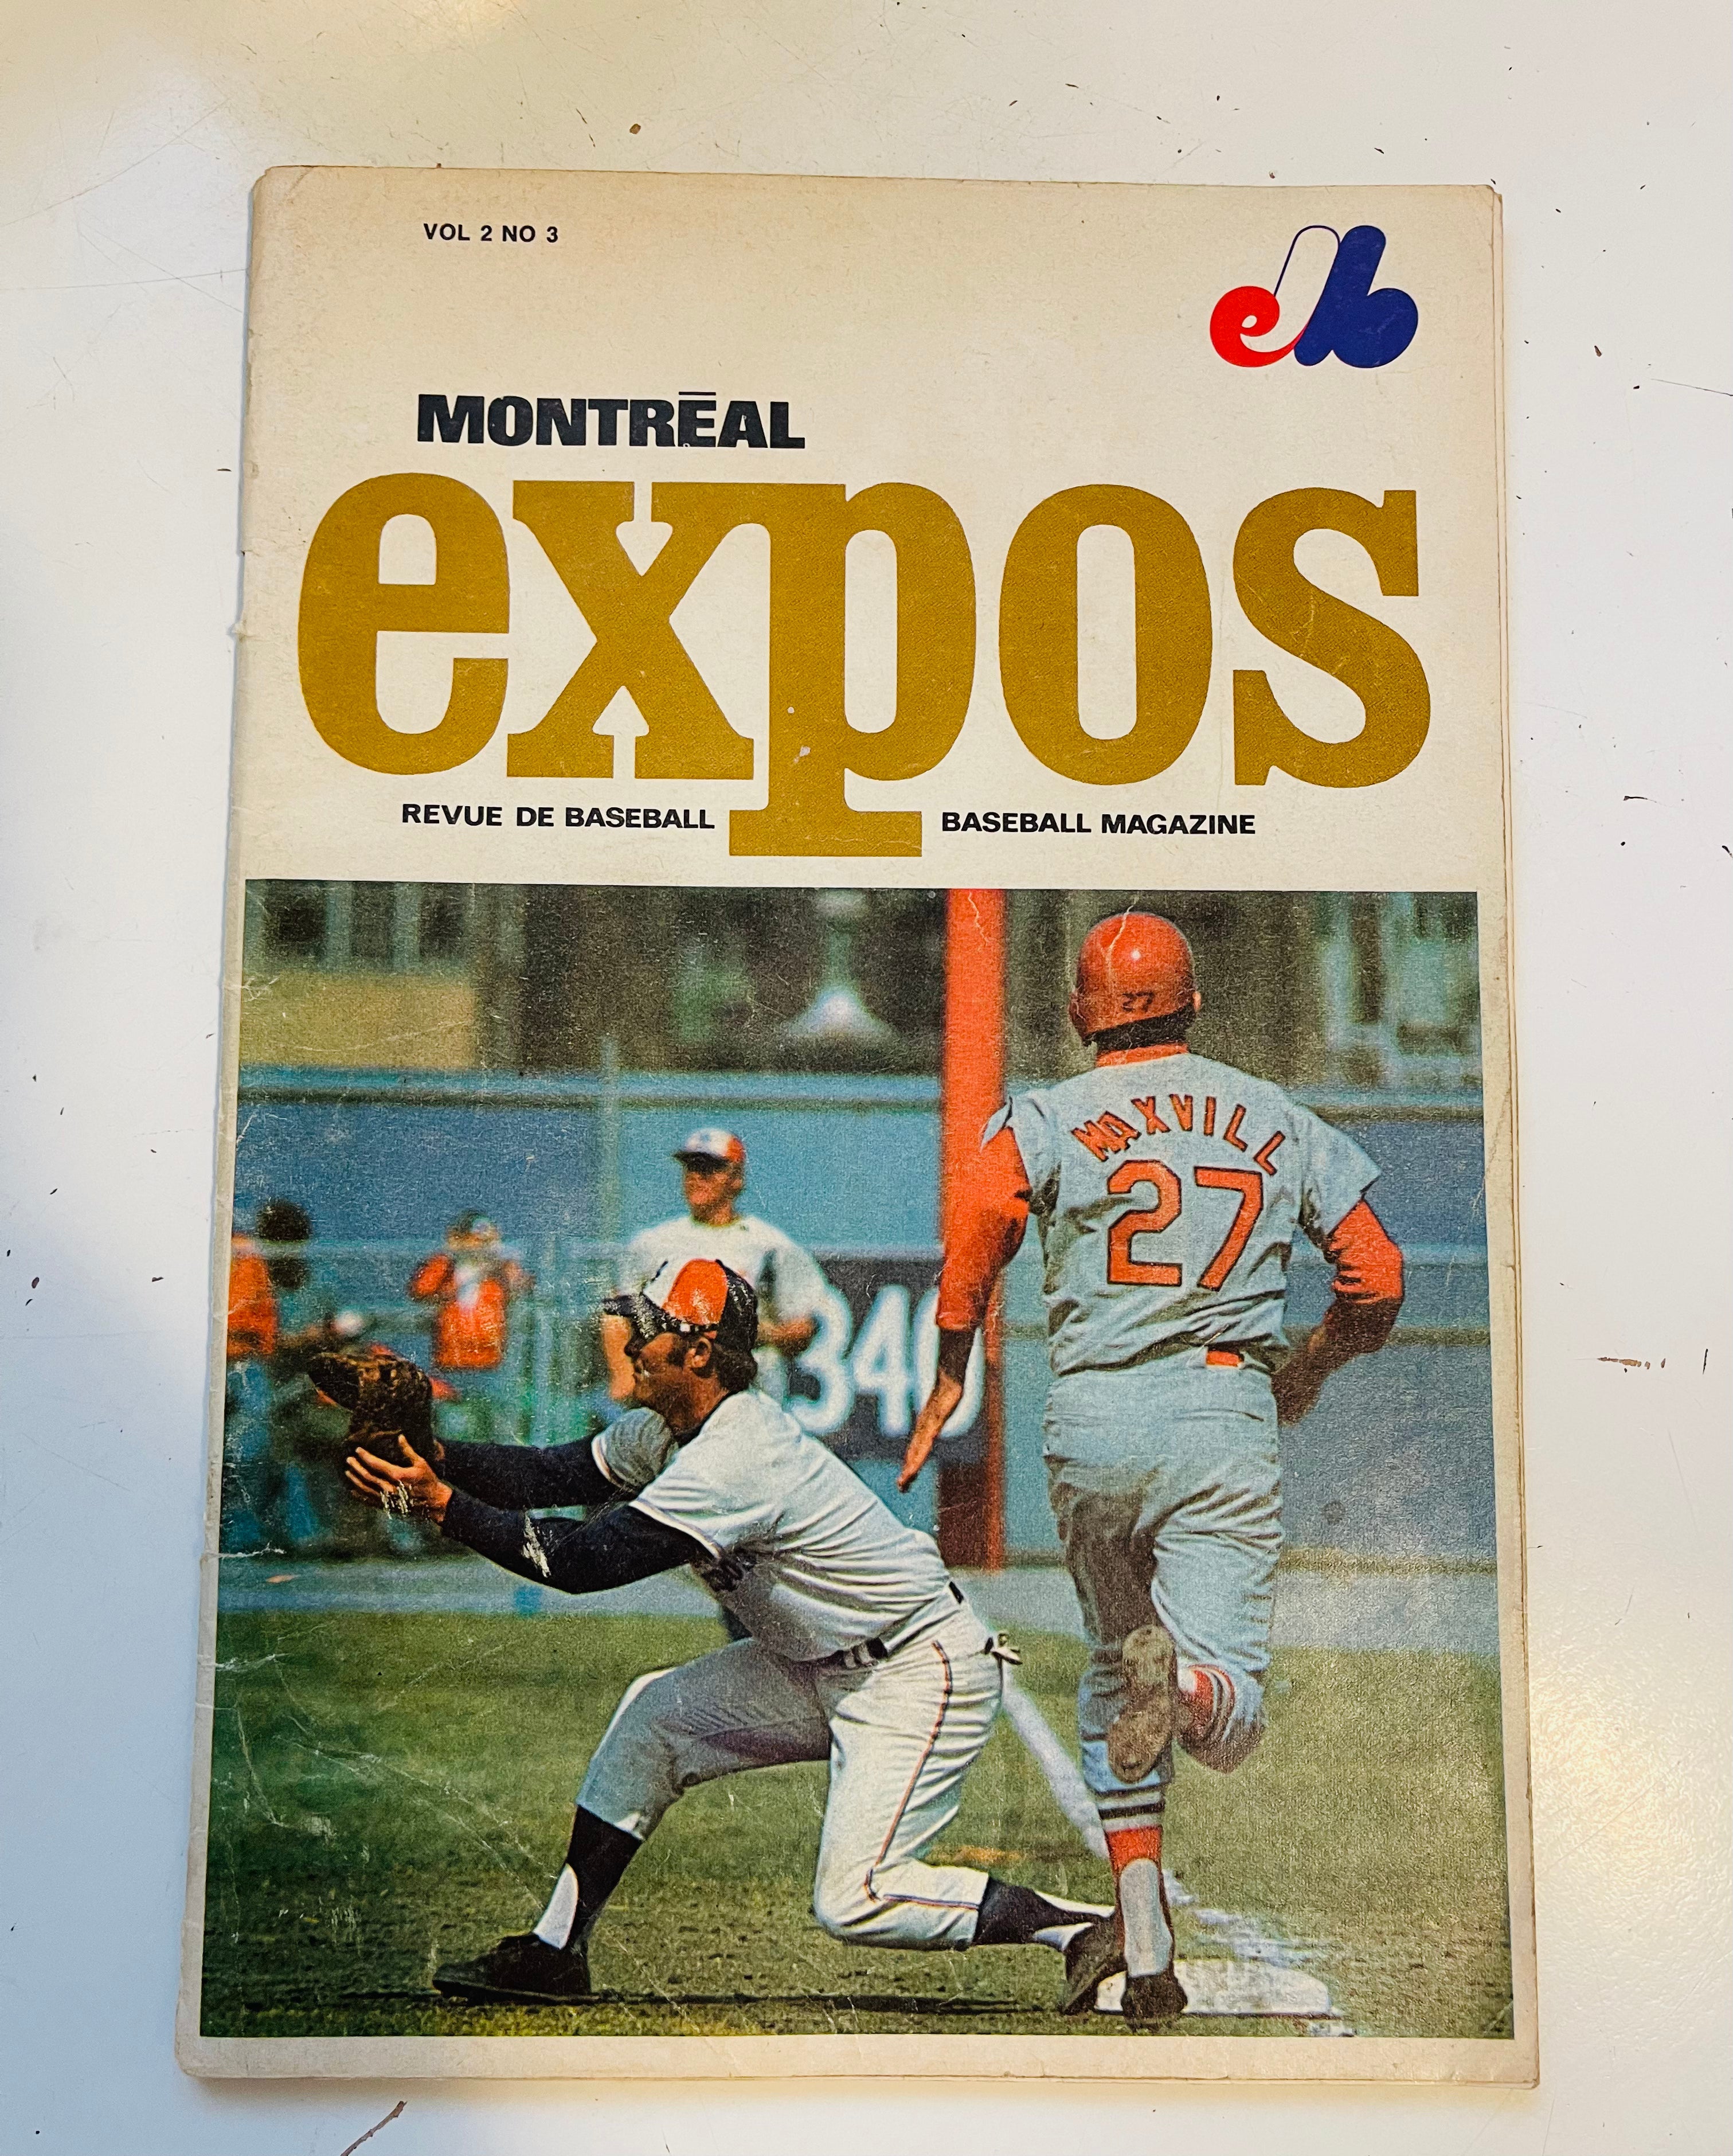 Montreal Expos baseball game program 1970